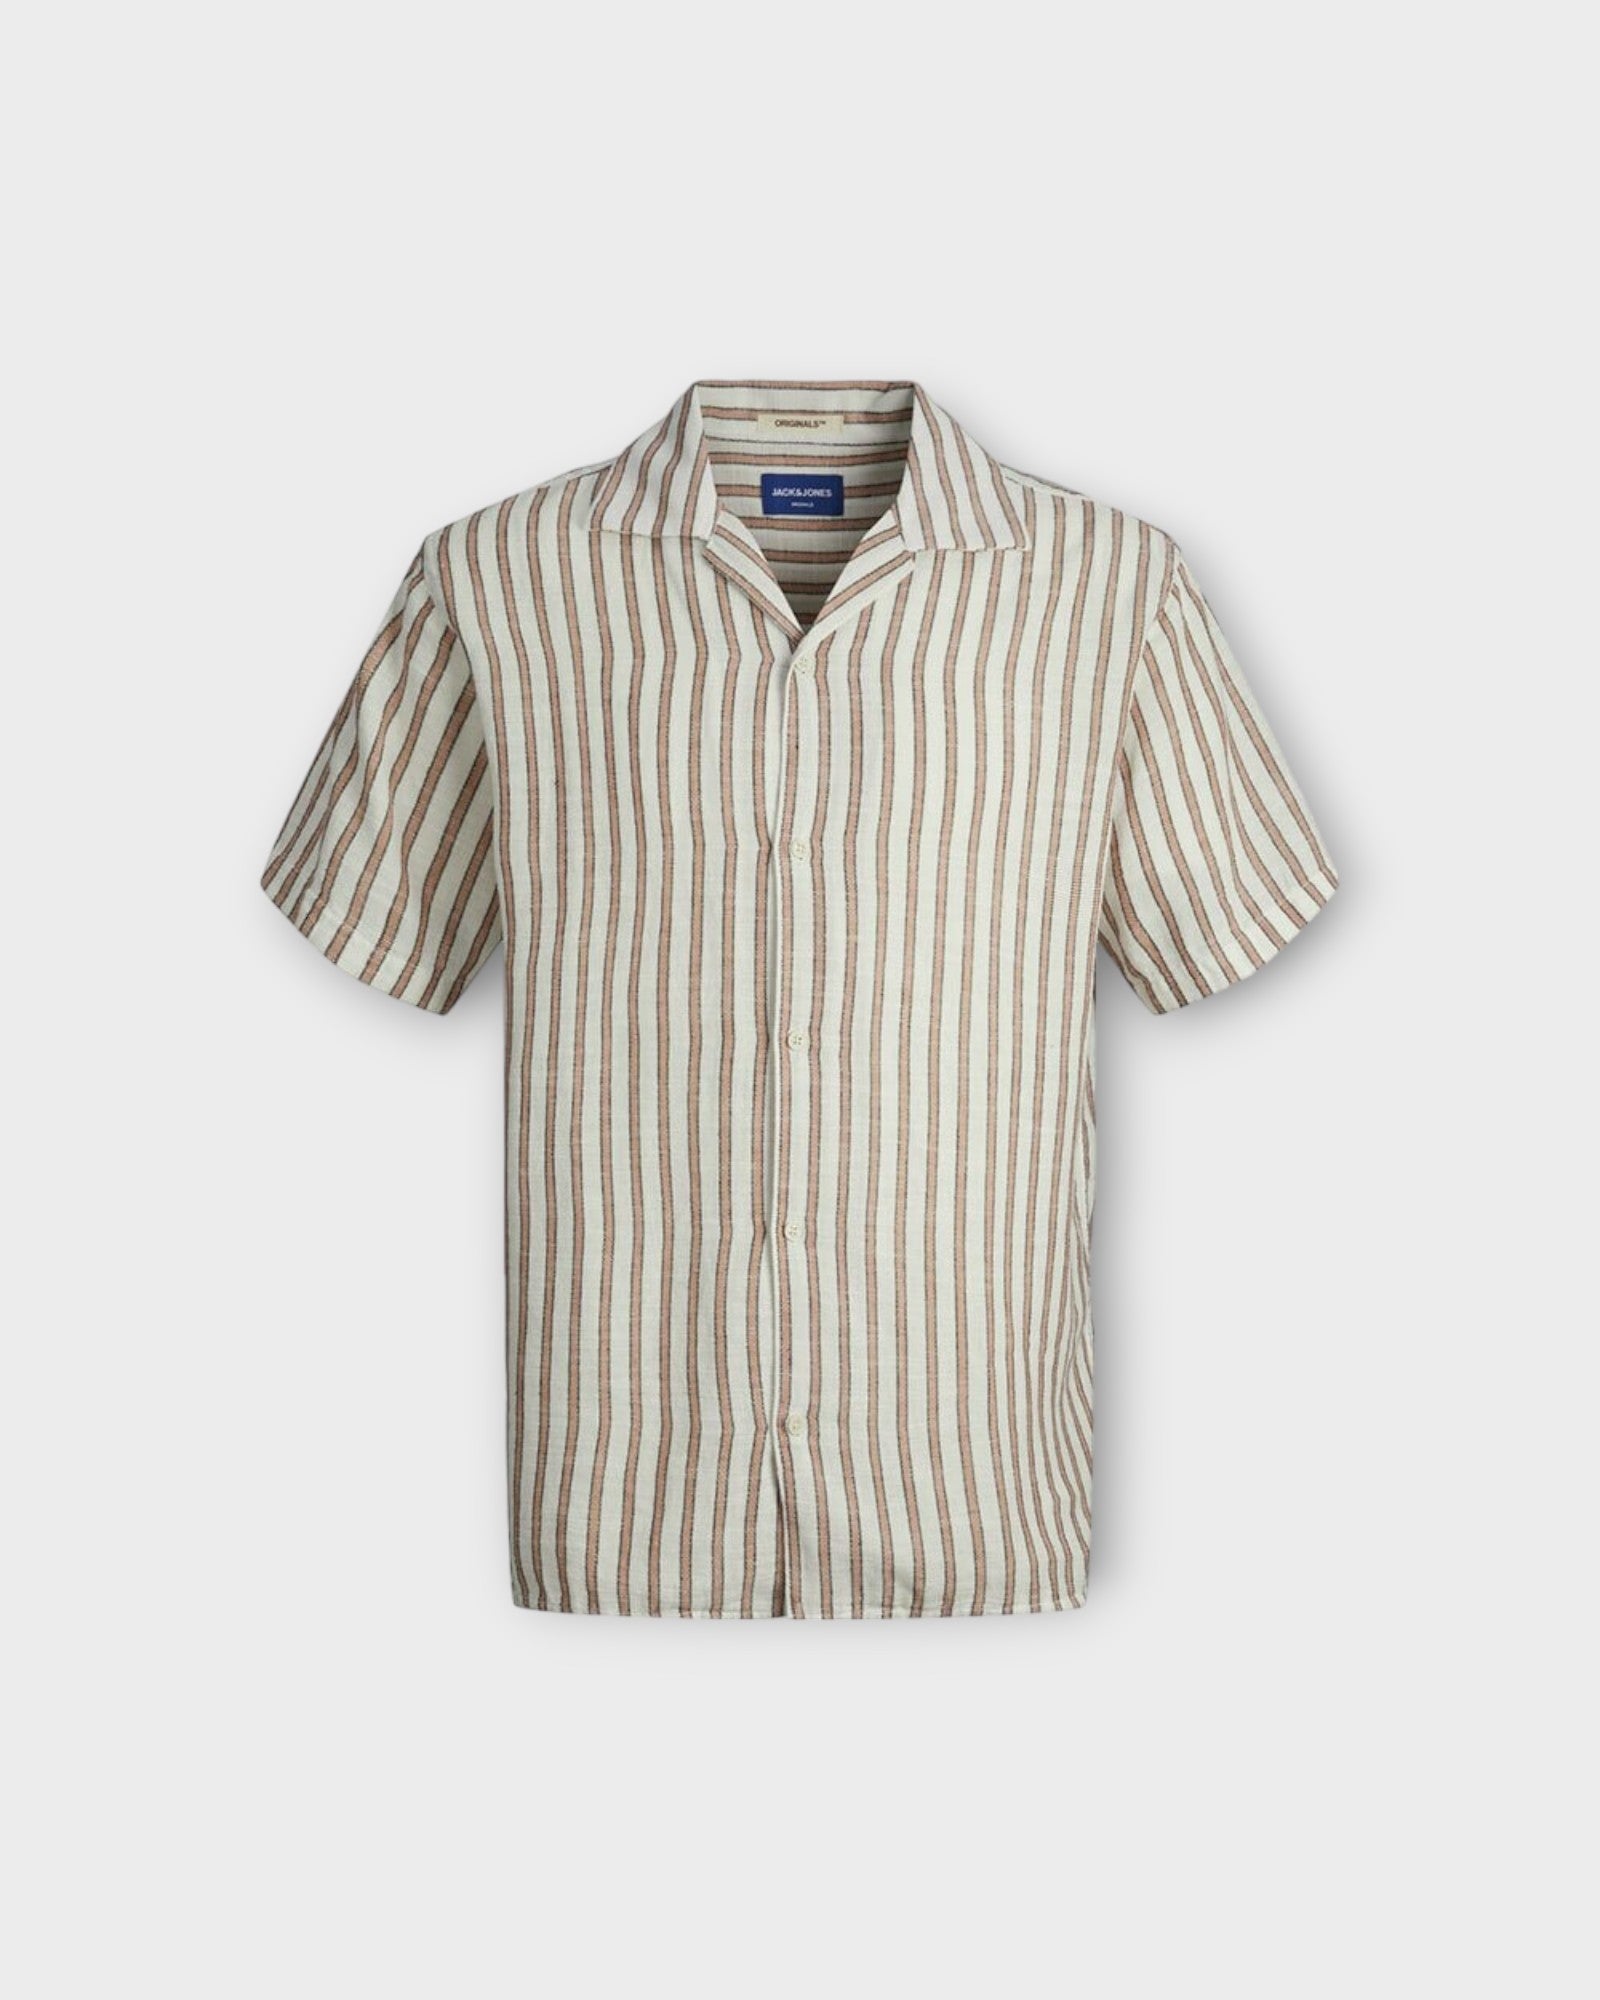 Jack and Jones Noto Stripe Resort Shirt Carnelian, kortærmet stribet hørskjorte med Cubakrave. Her set forfra.